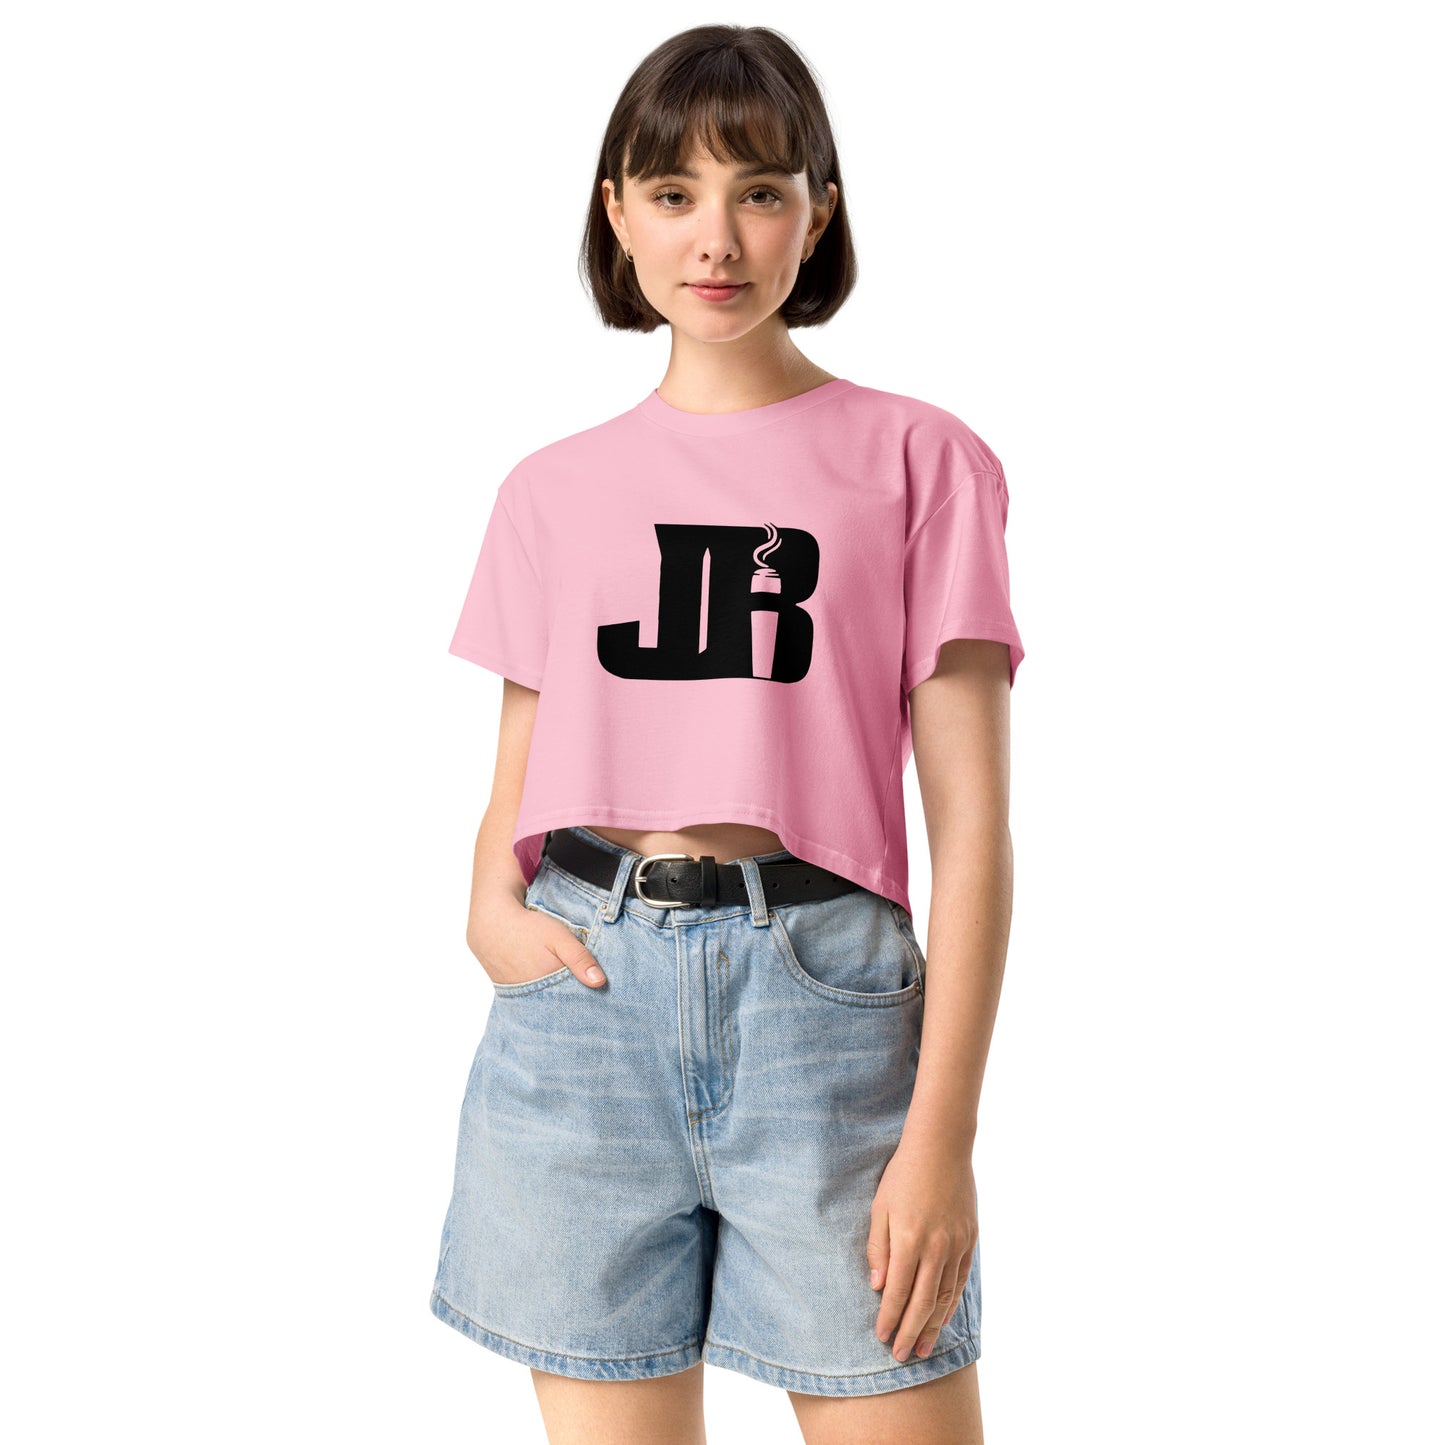 JB Women’s crop top